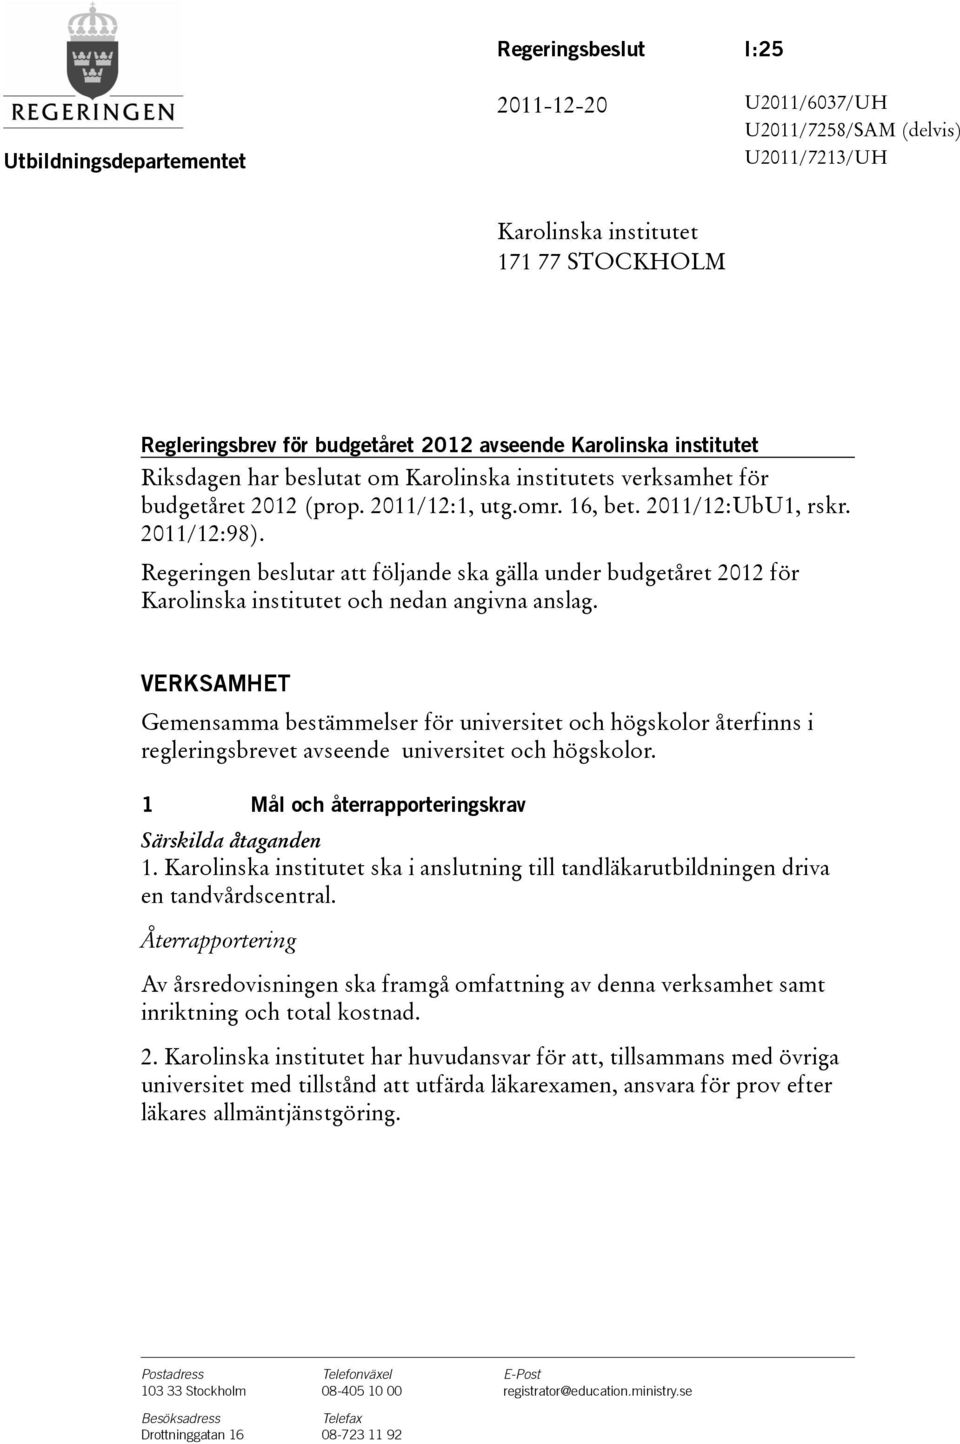 Regeringen beslutar att följande ska gälla under budgetåret 2012 för Karolinska institutet och nedan angivna anslag.